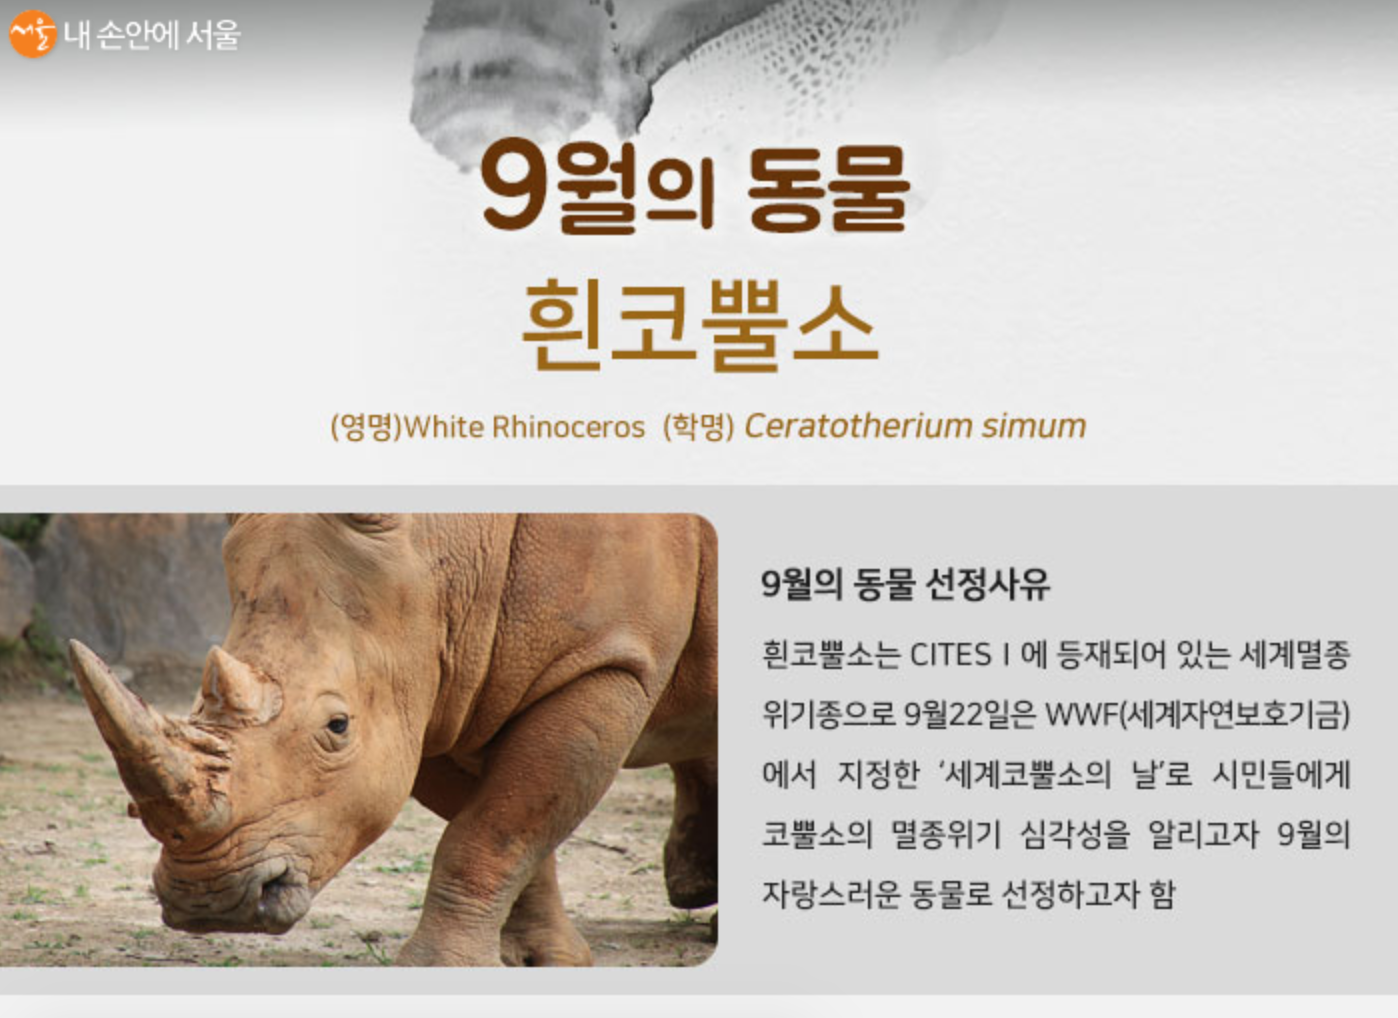 서울동물원은 코뿔소의 날을 맞아 이달의 동물로 흰코뿔소를 선정했다.